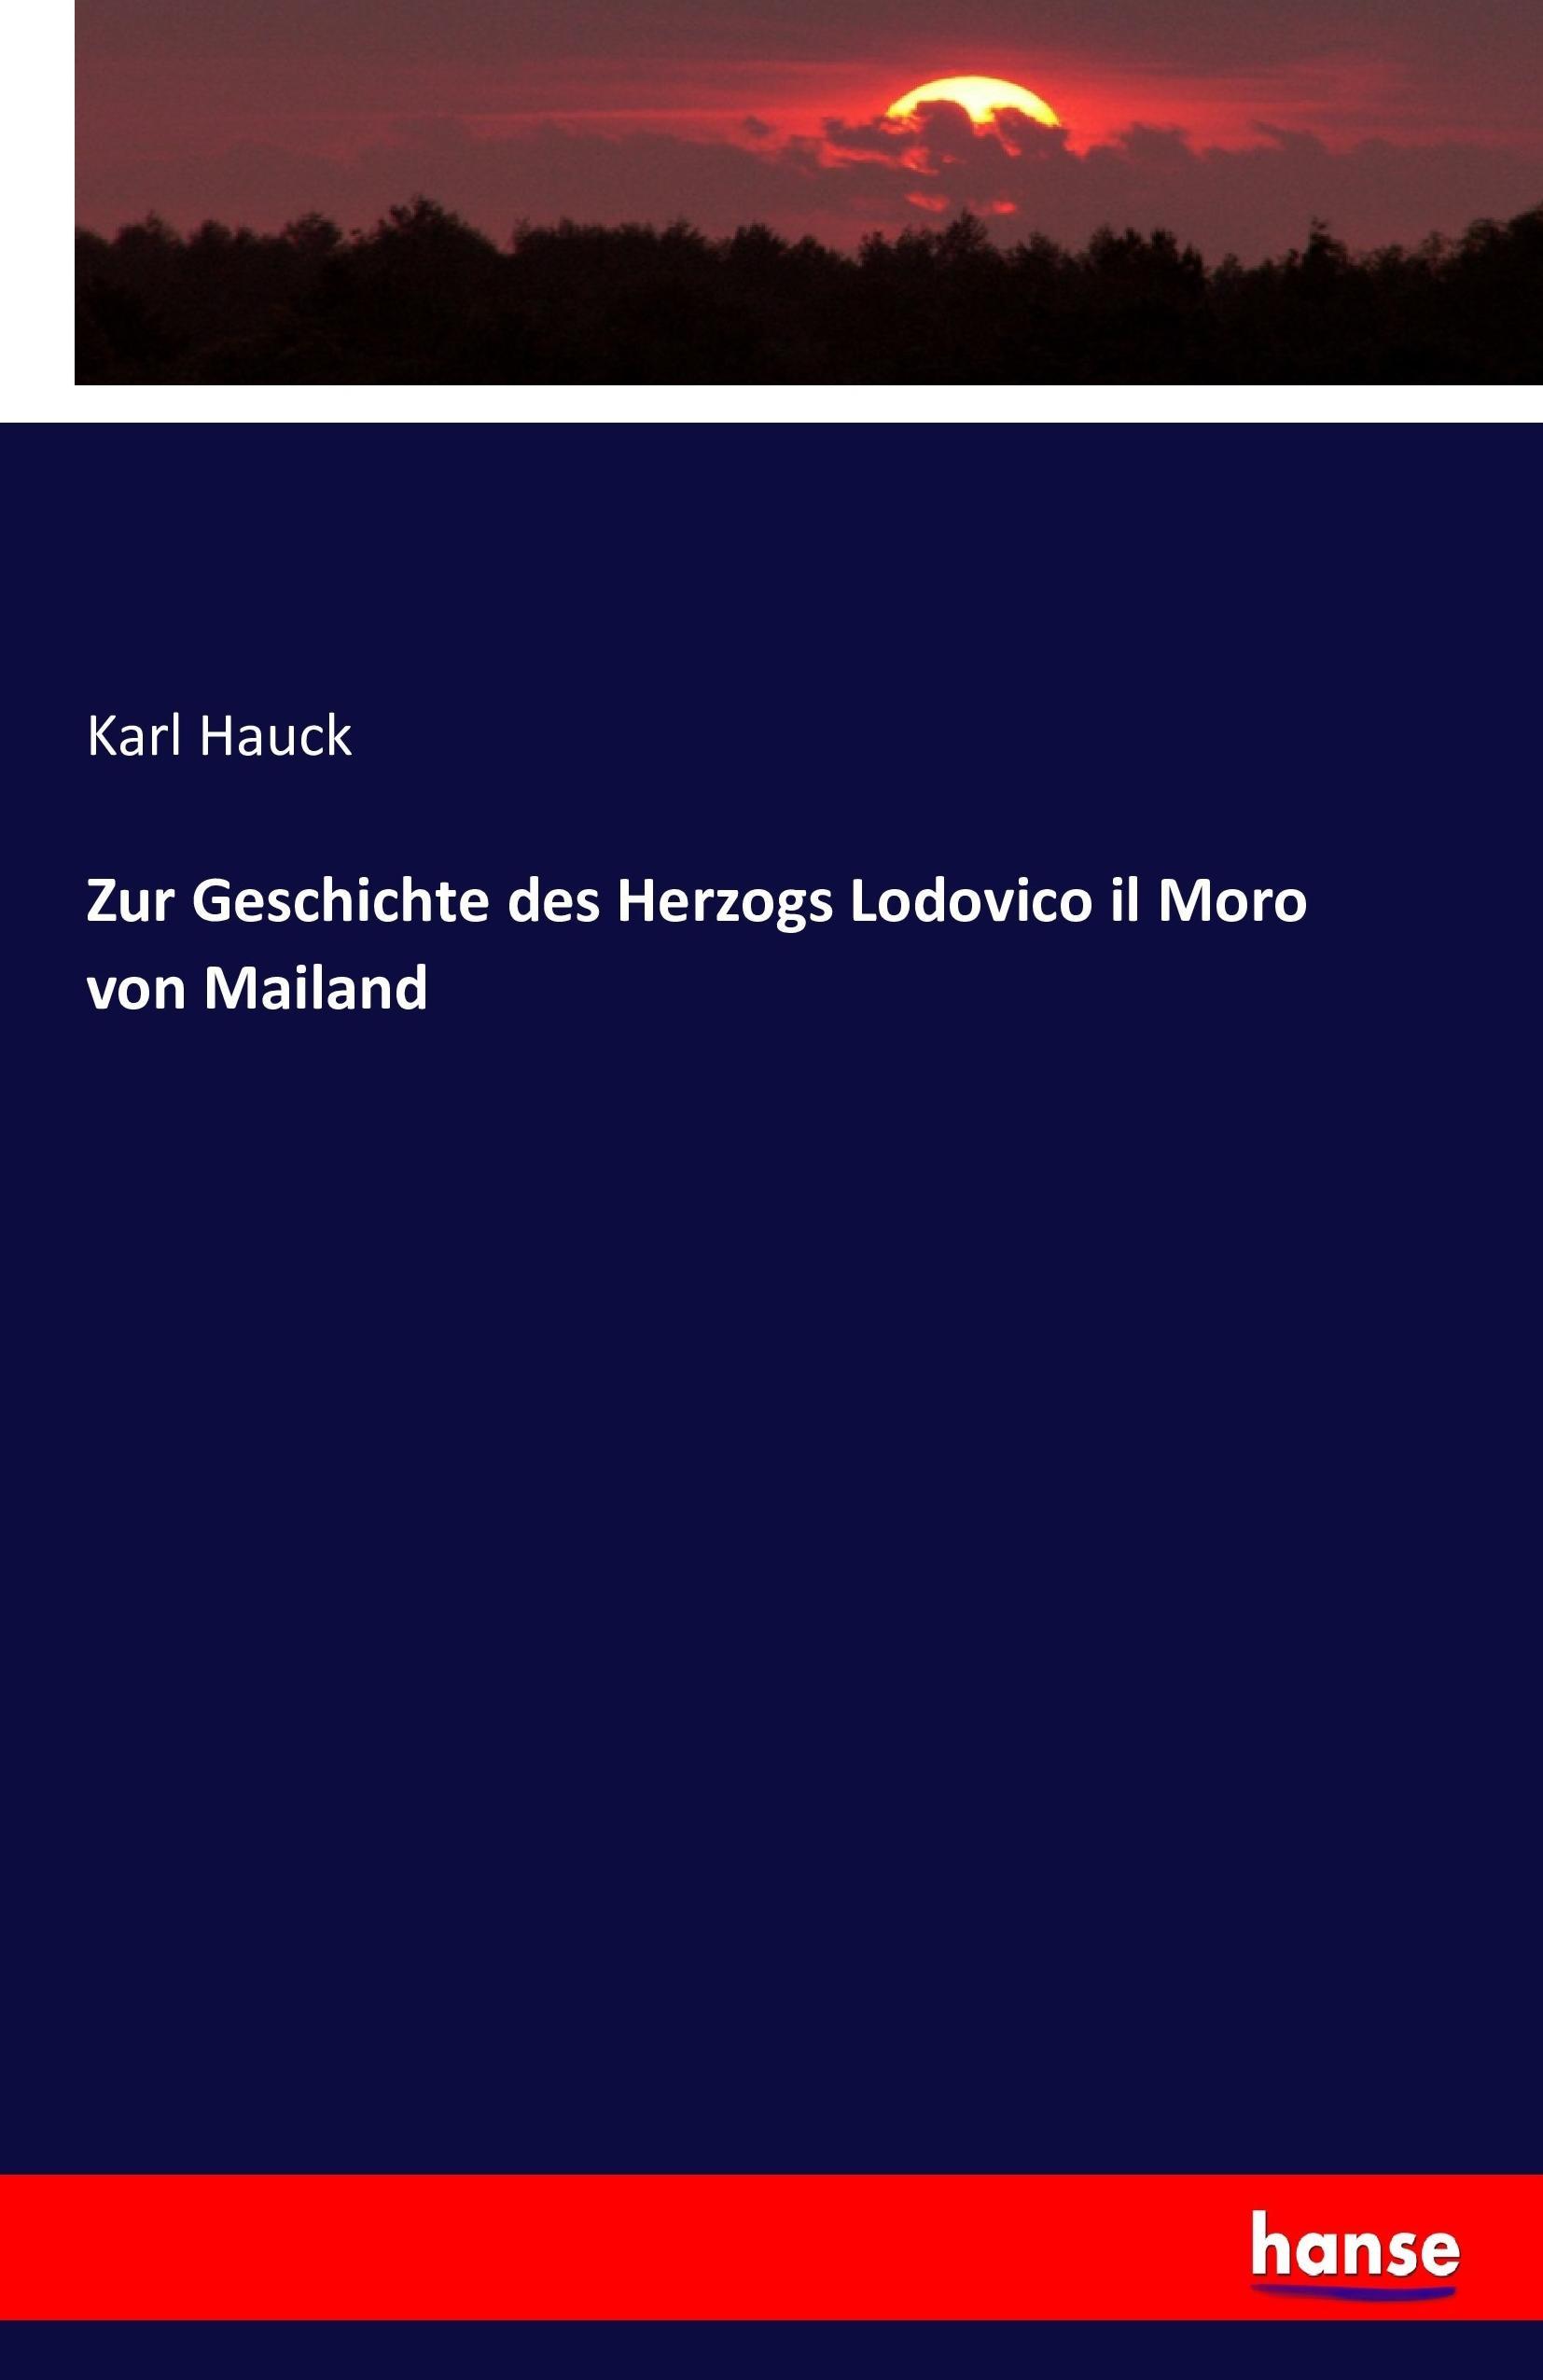 Zur Geschichte des Herzogs Lodovico il Moro von Mailand - Hauck, Karl